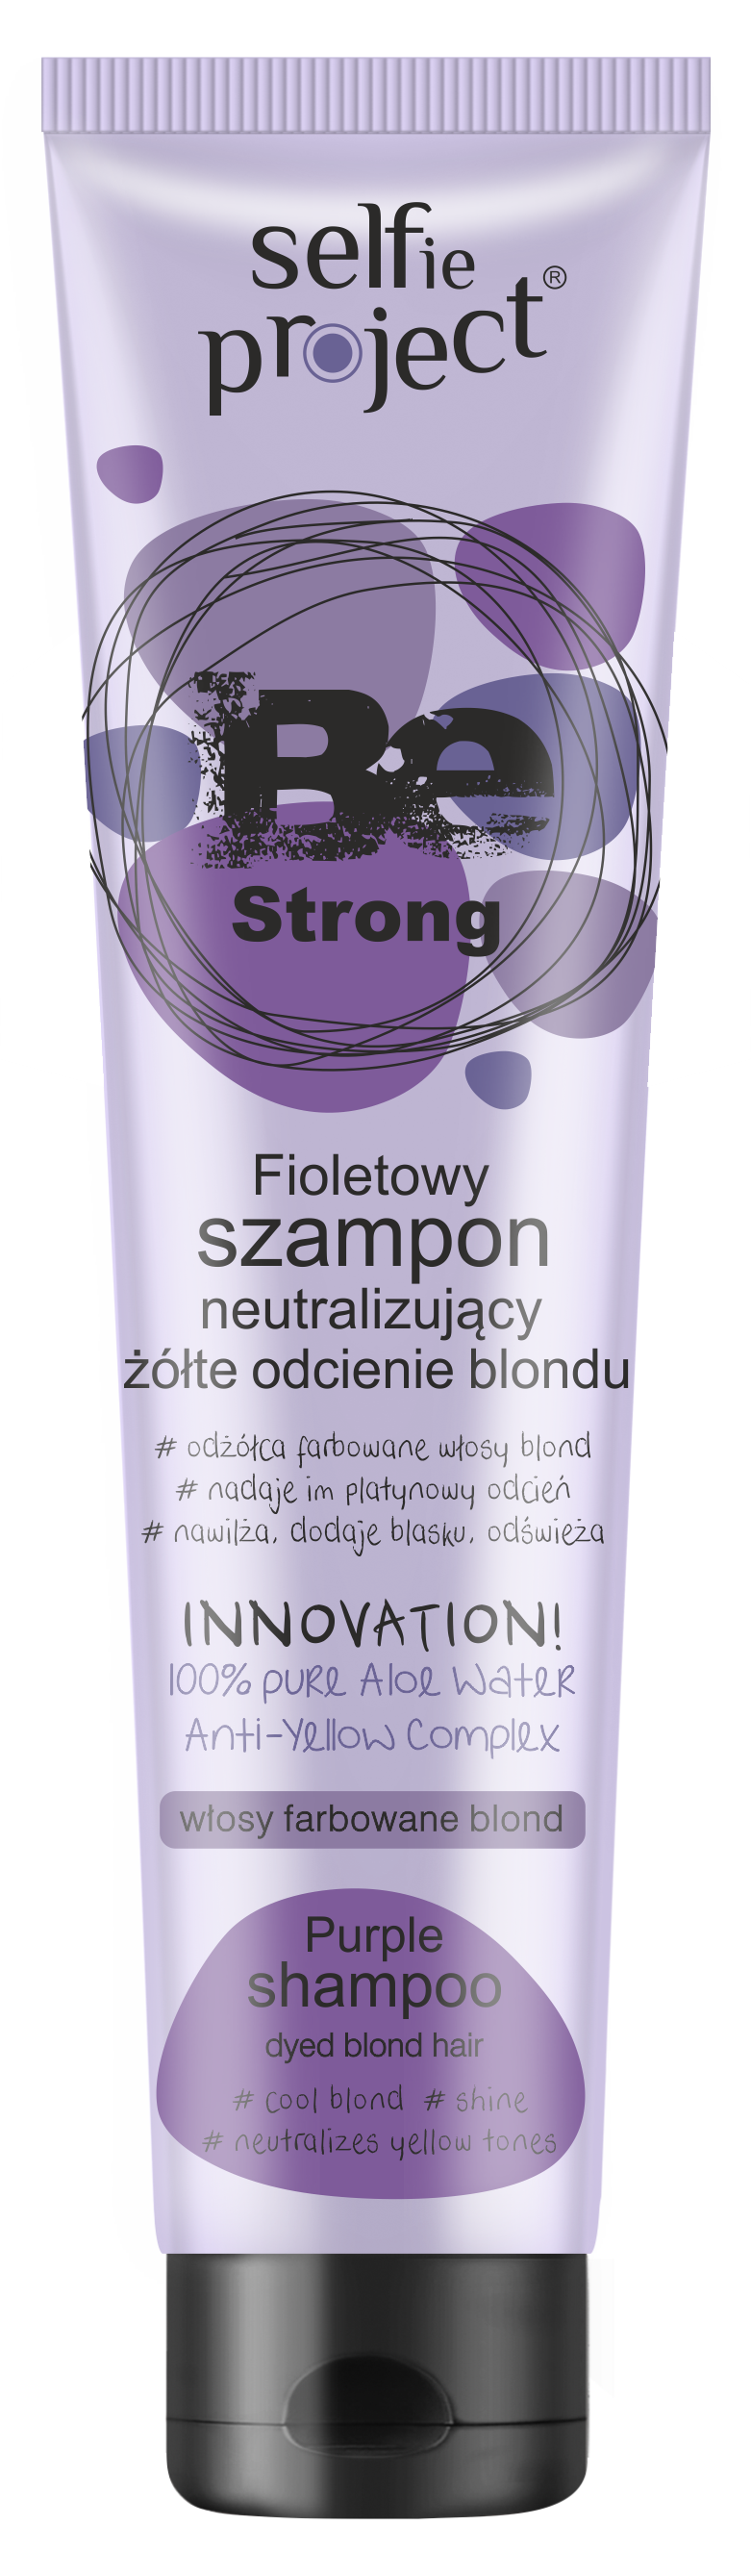 fioletowy szampon na naturalnych wlosach